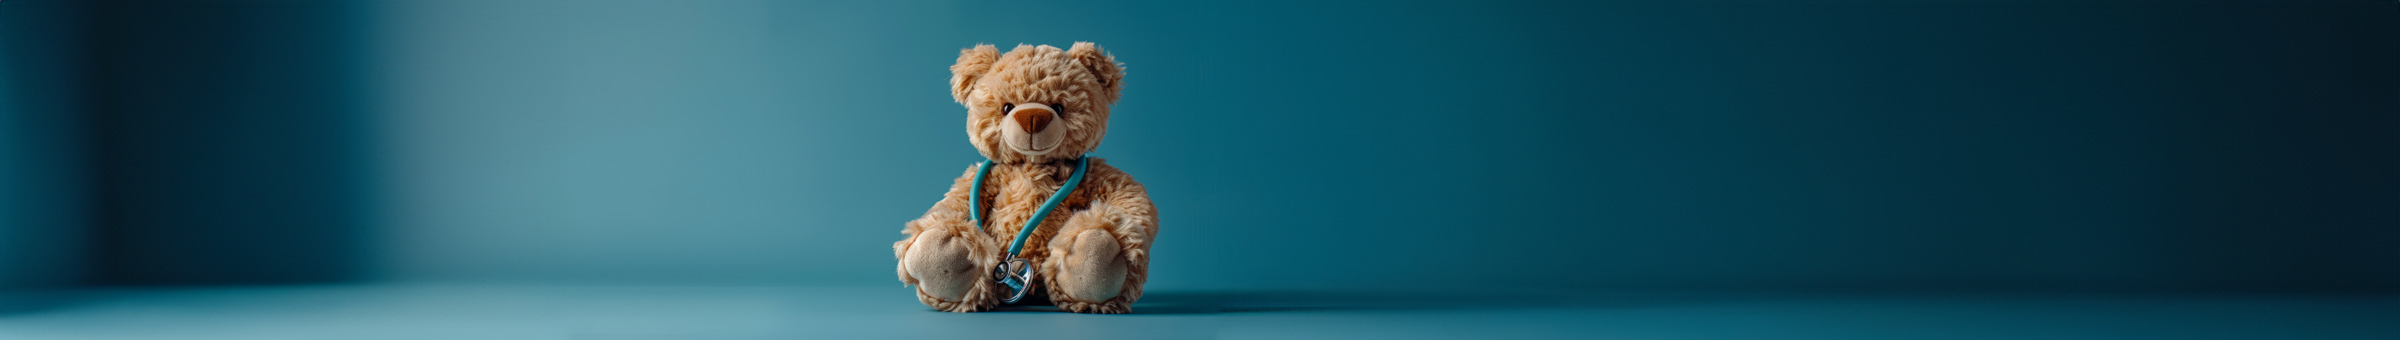 Plüsch-Teddybär mit Stethoskop spielt Arzt